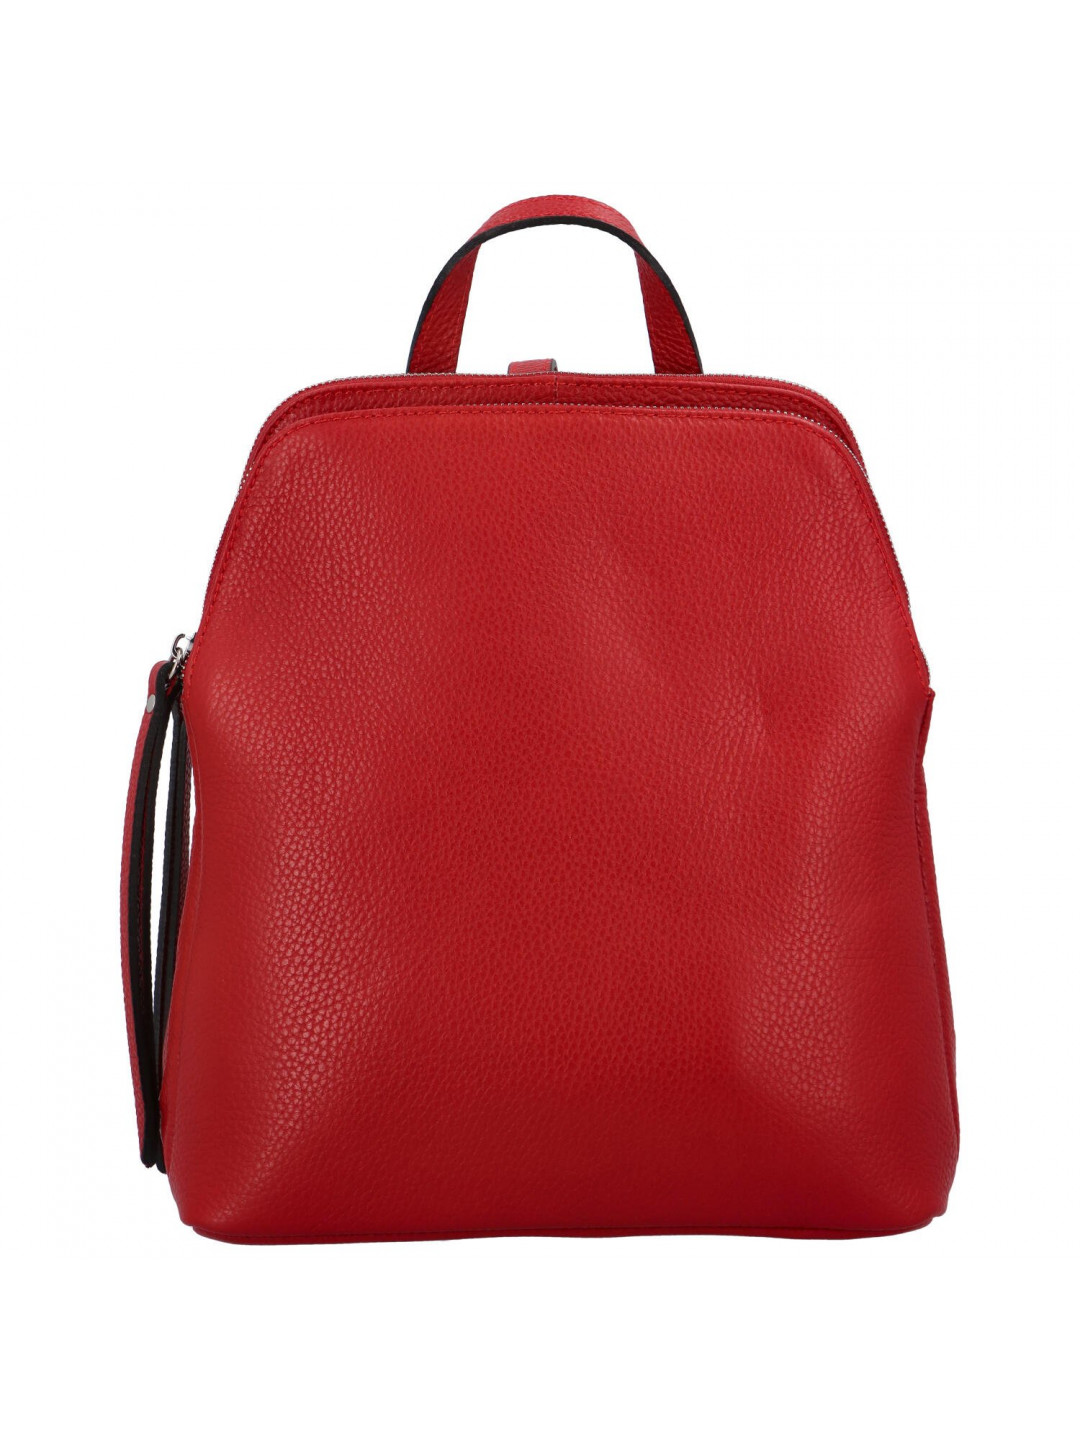 Dámský kožený batoh červený – ItalY Madero